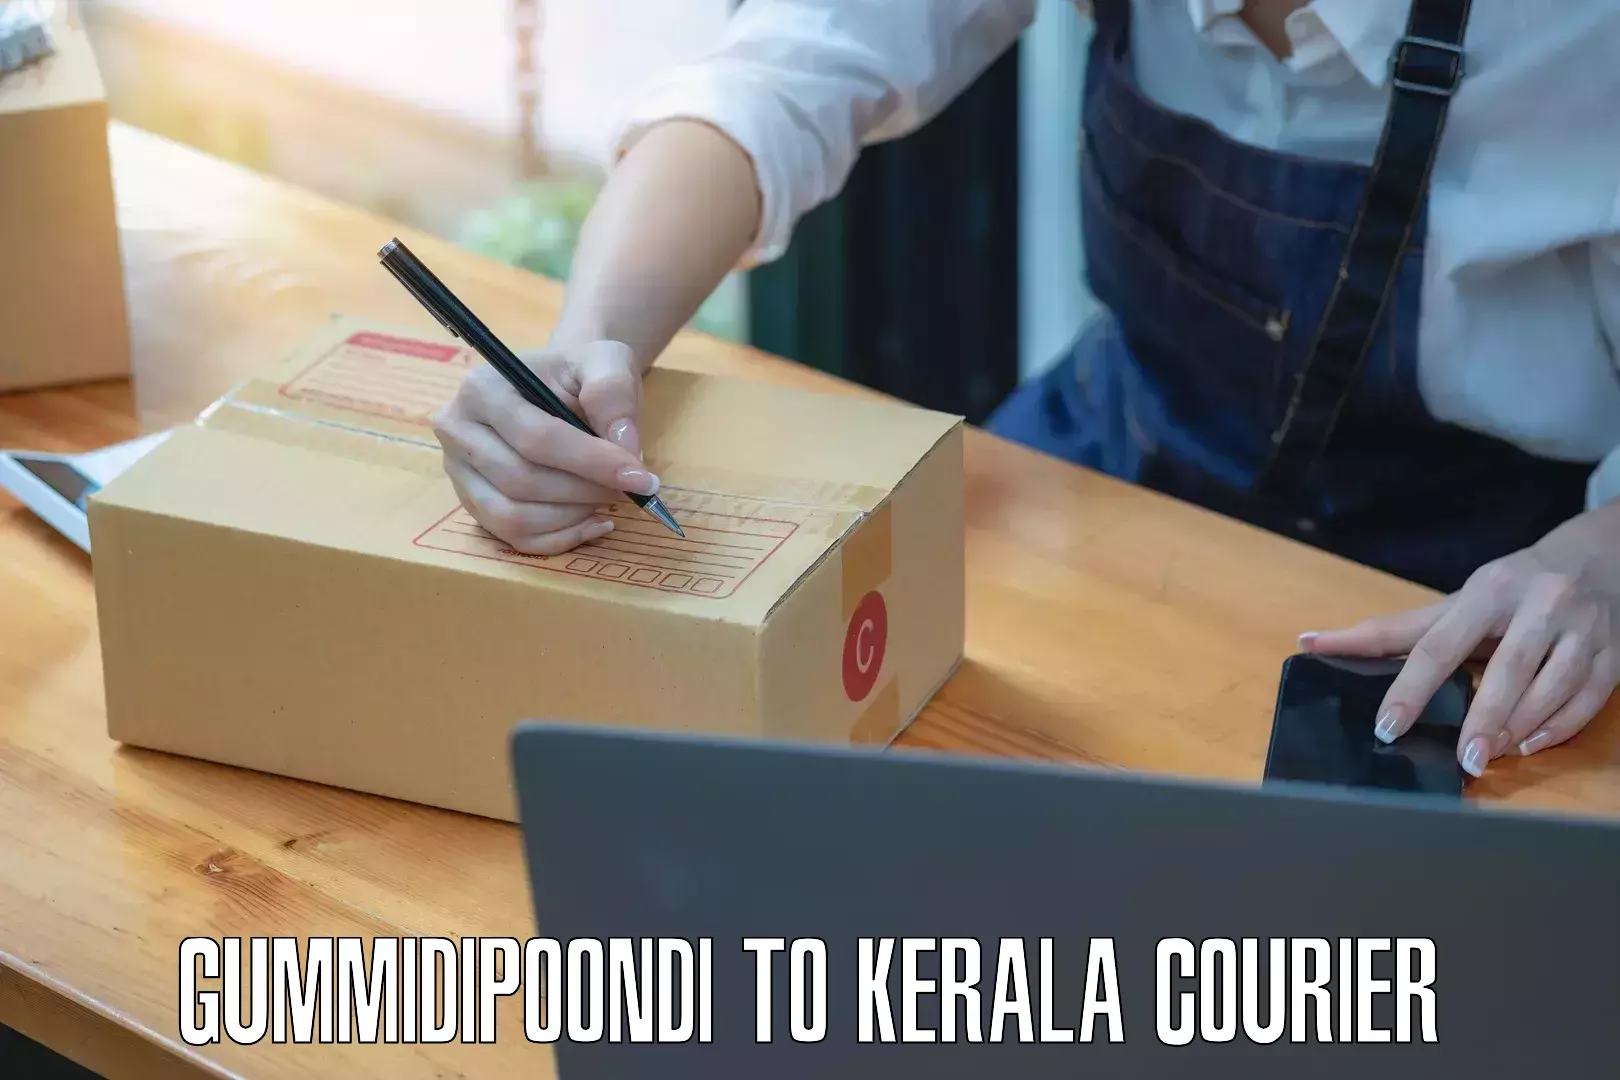 Reliable courier service Gummidipoondi to Kuthiathode